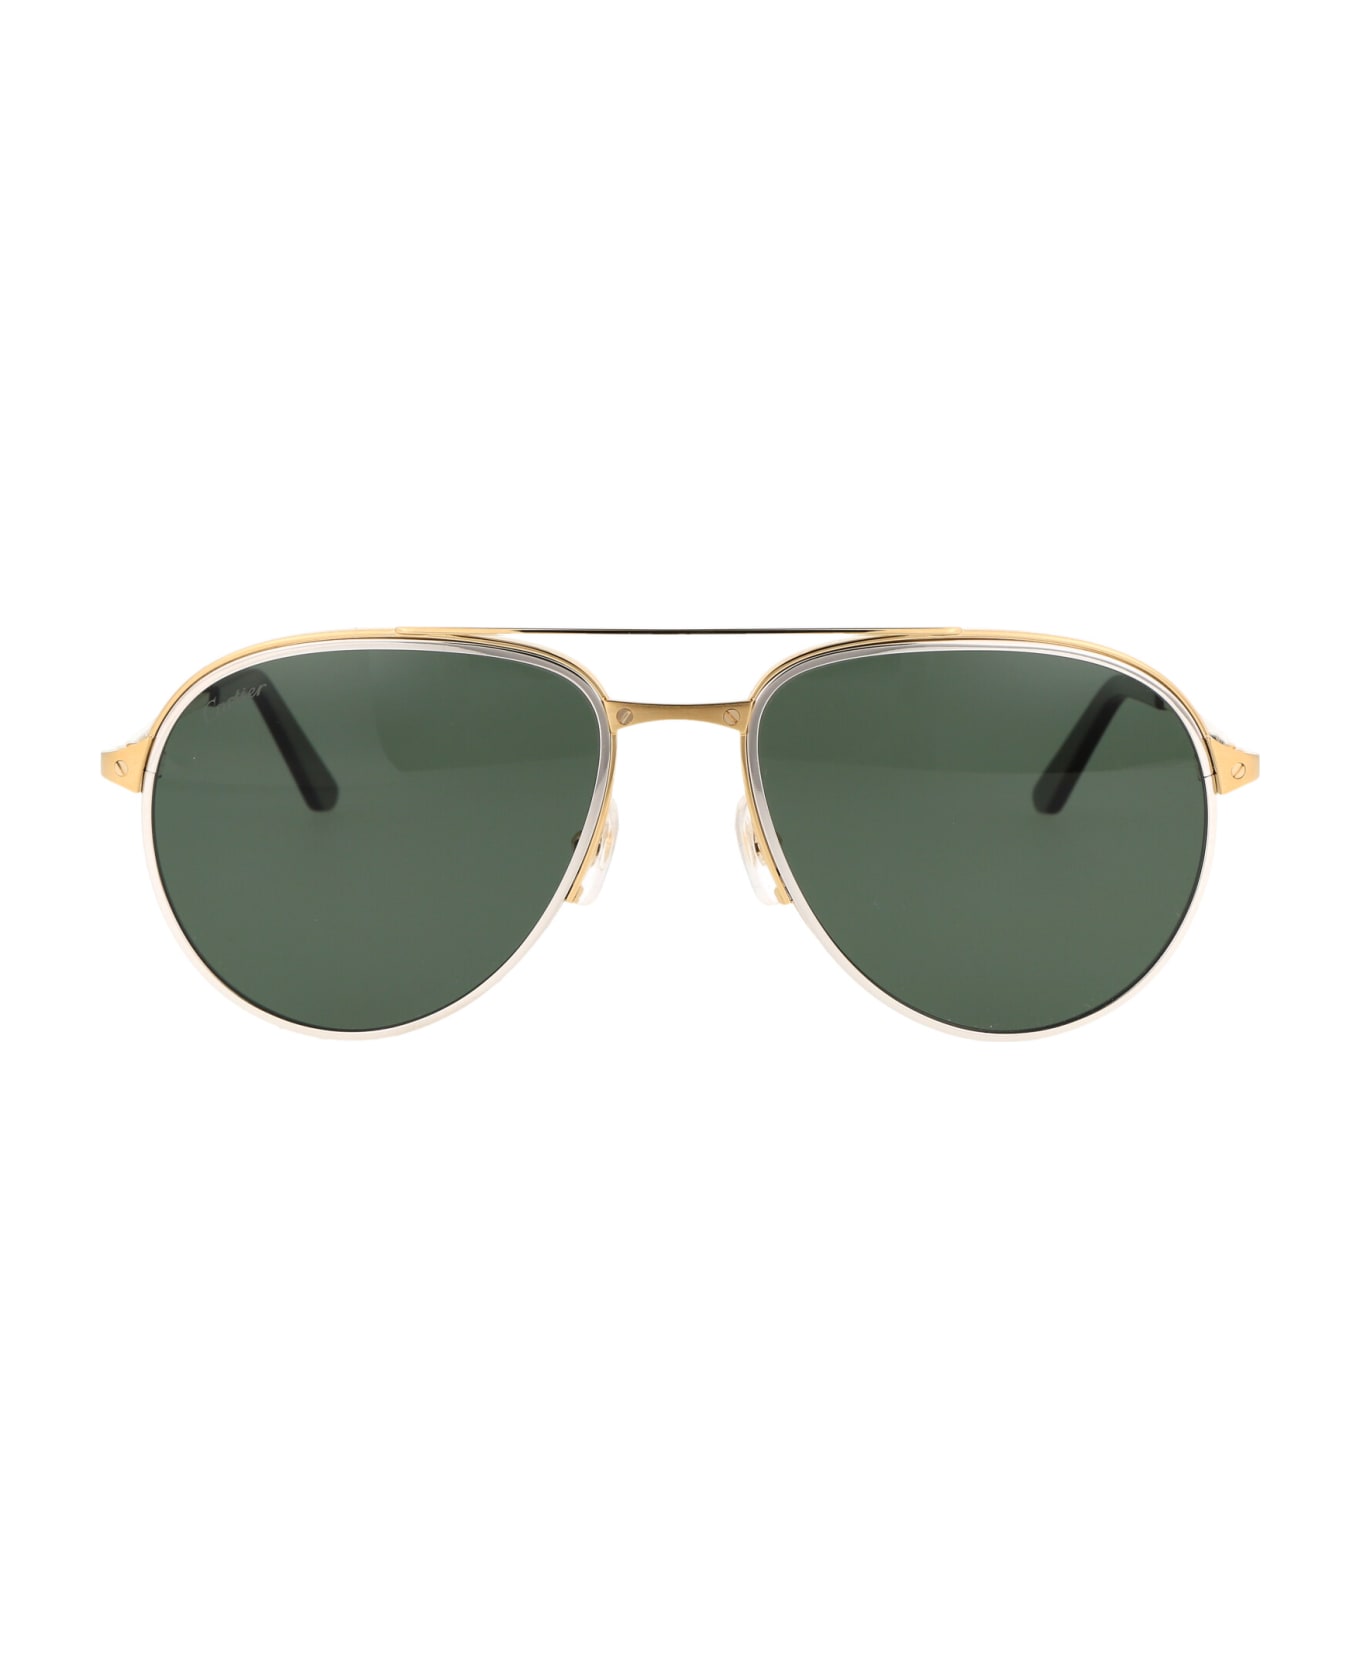 Cartier Eyewear Ct0325s Sunglasses - 006 GOLD GOLD GREEN